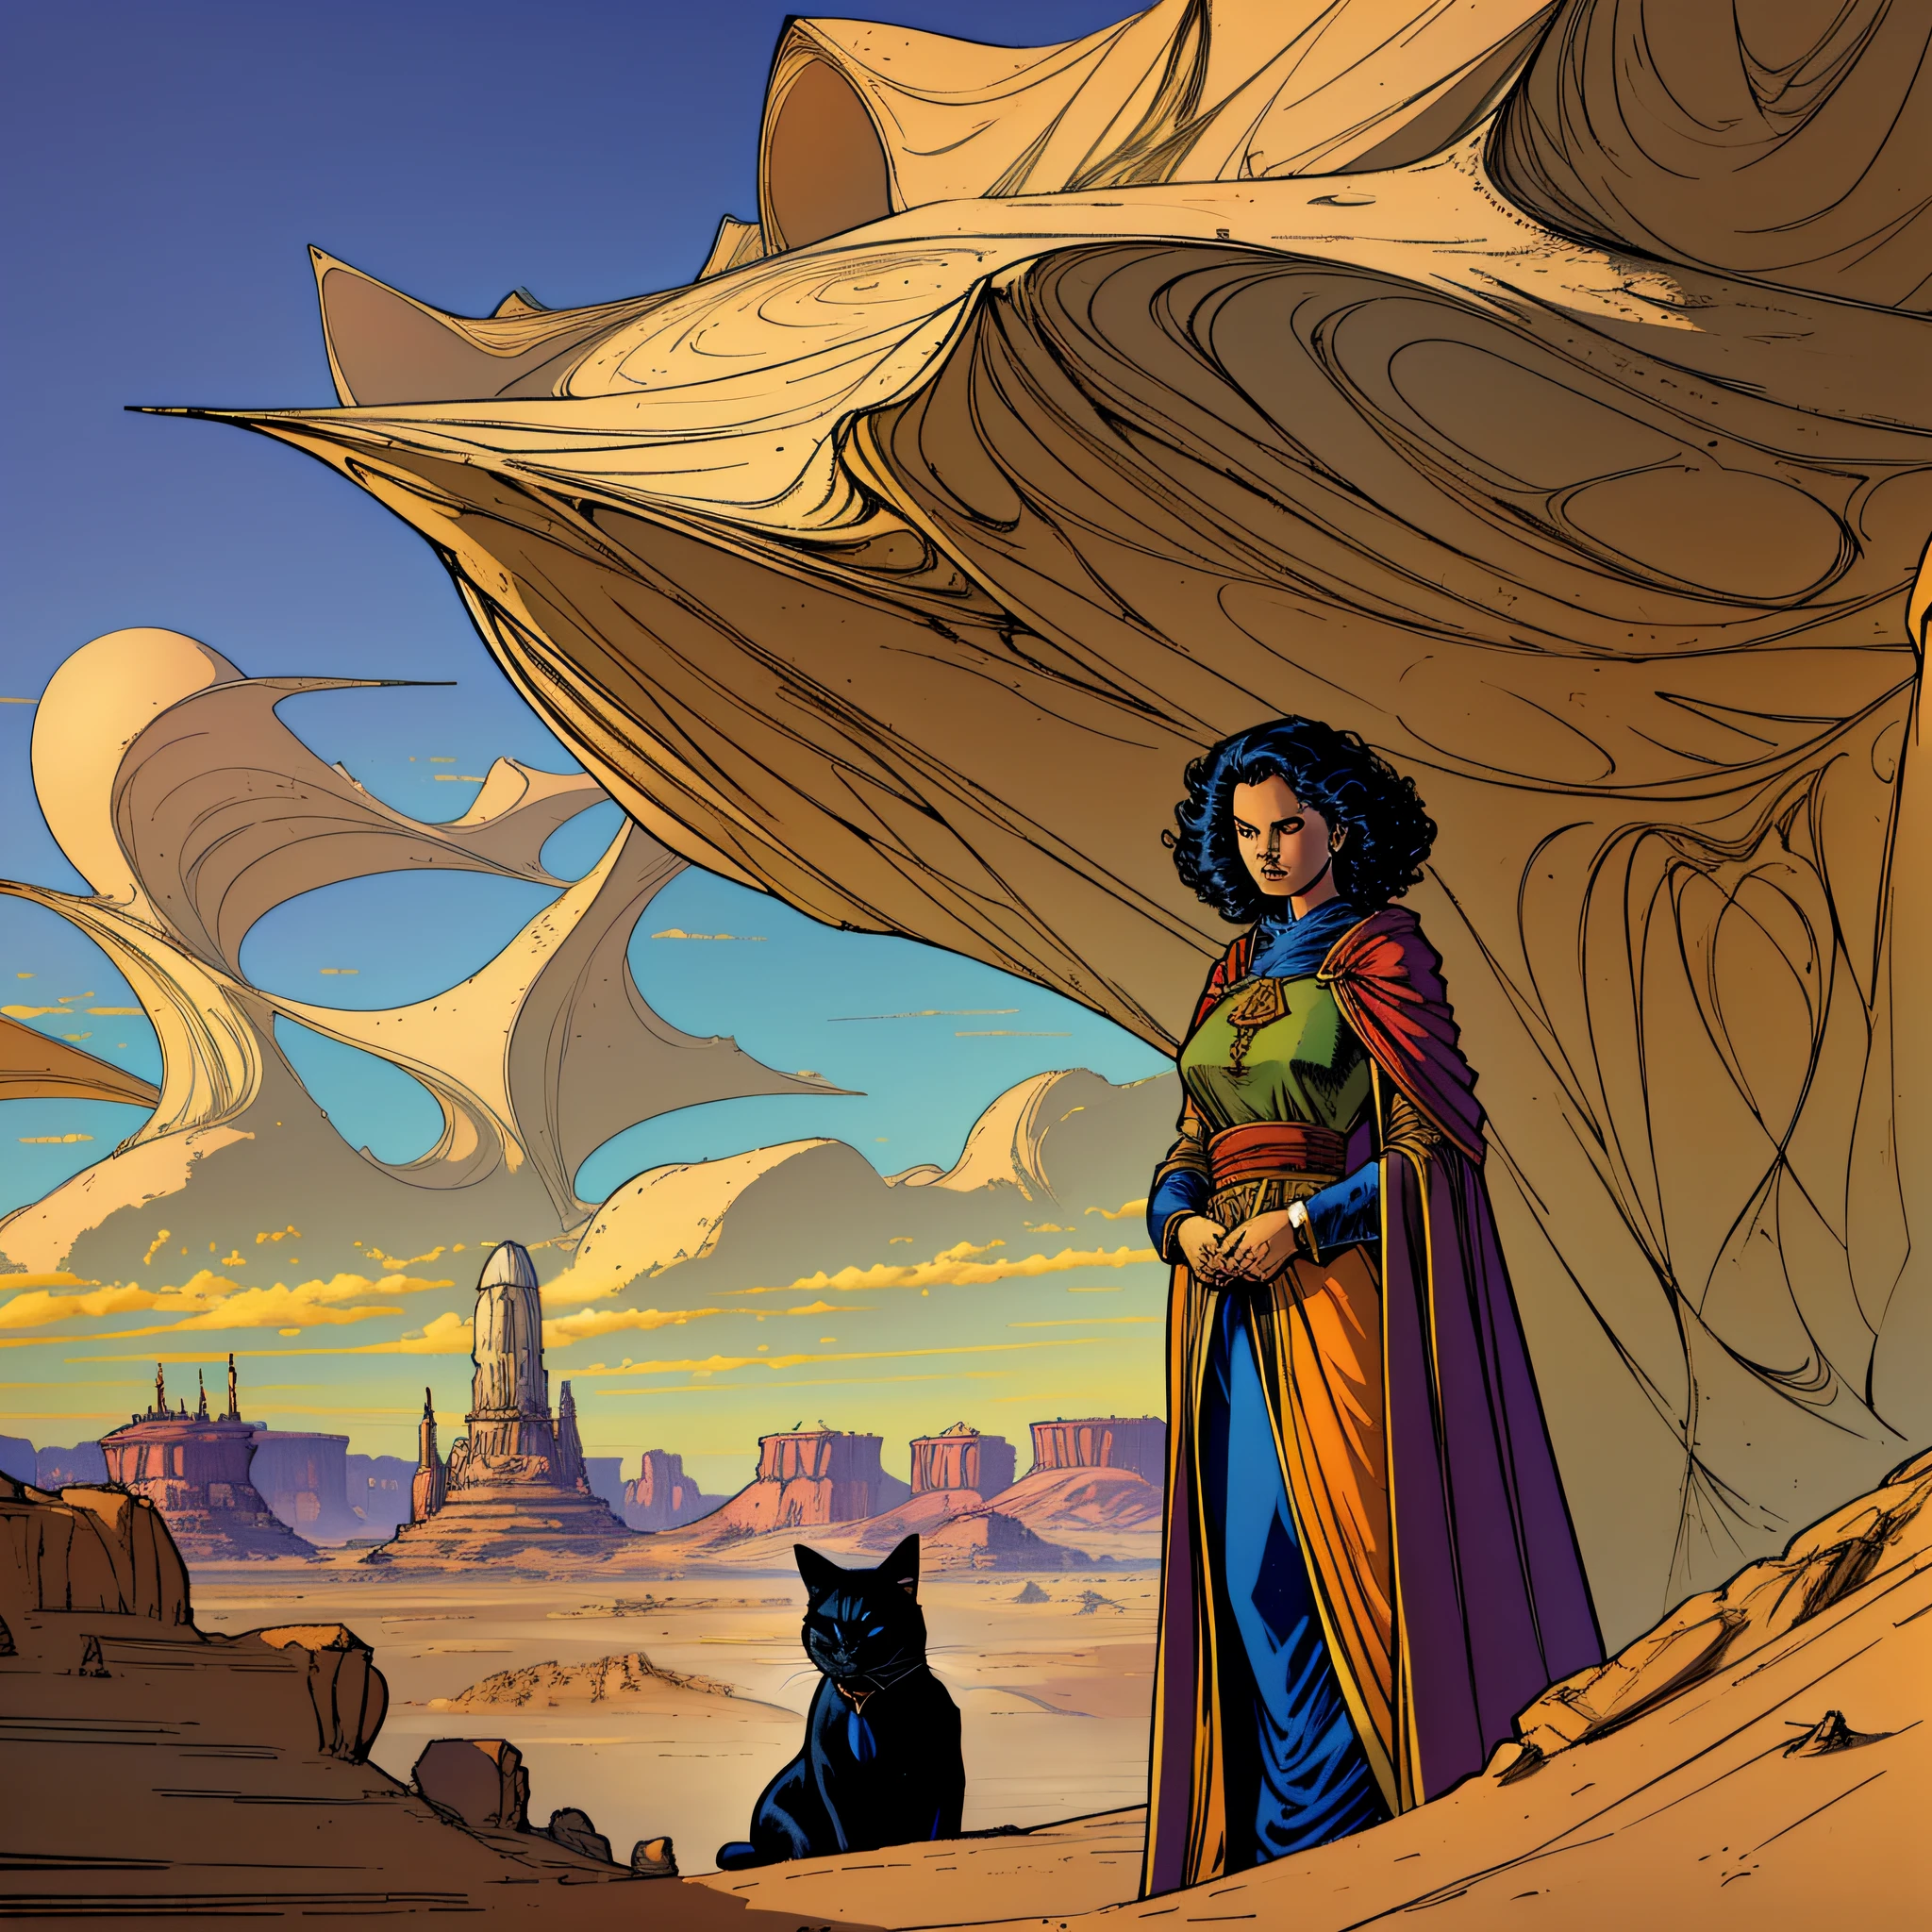 ((最好的品質)), 畫中一位穿著斗篷、鮑伯頭髮的女人和一隻黑貓俯瞰沙漠景觀, 莫比烏斯·讓·吉羅, 貓熊人